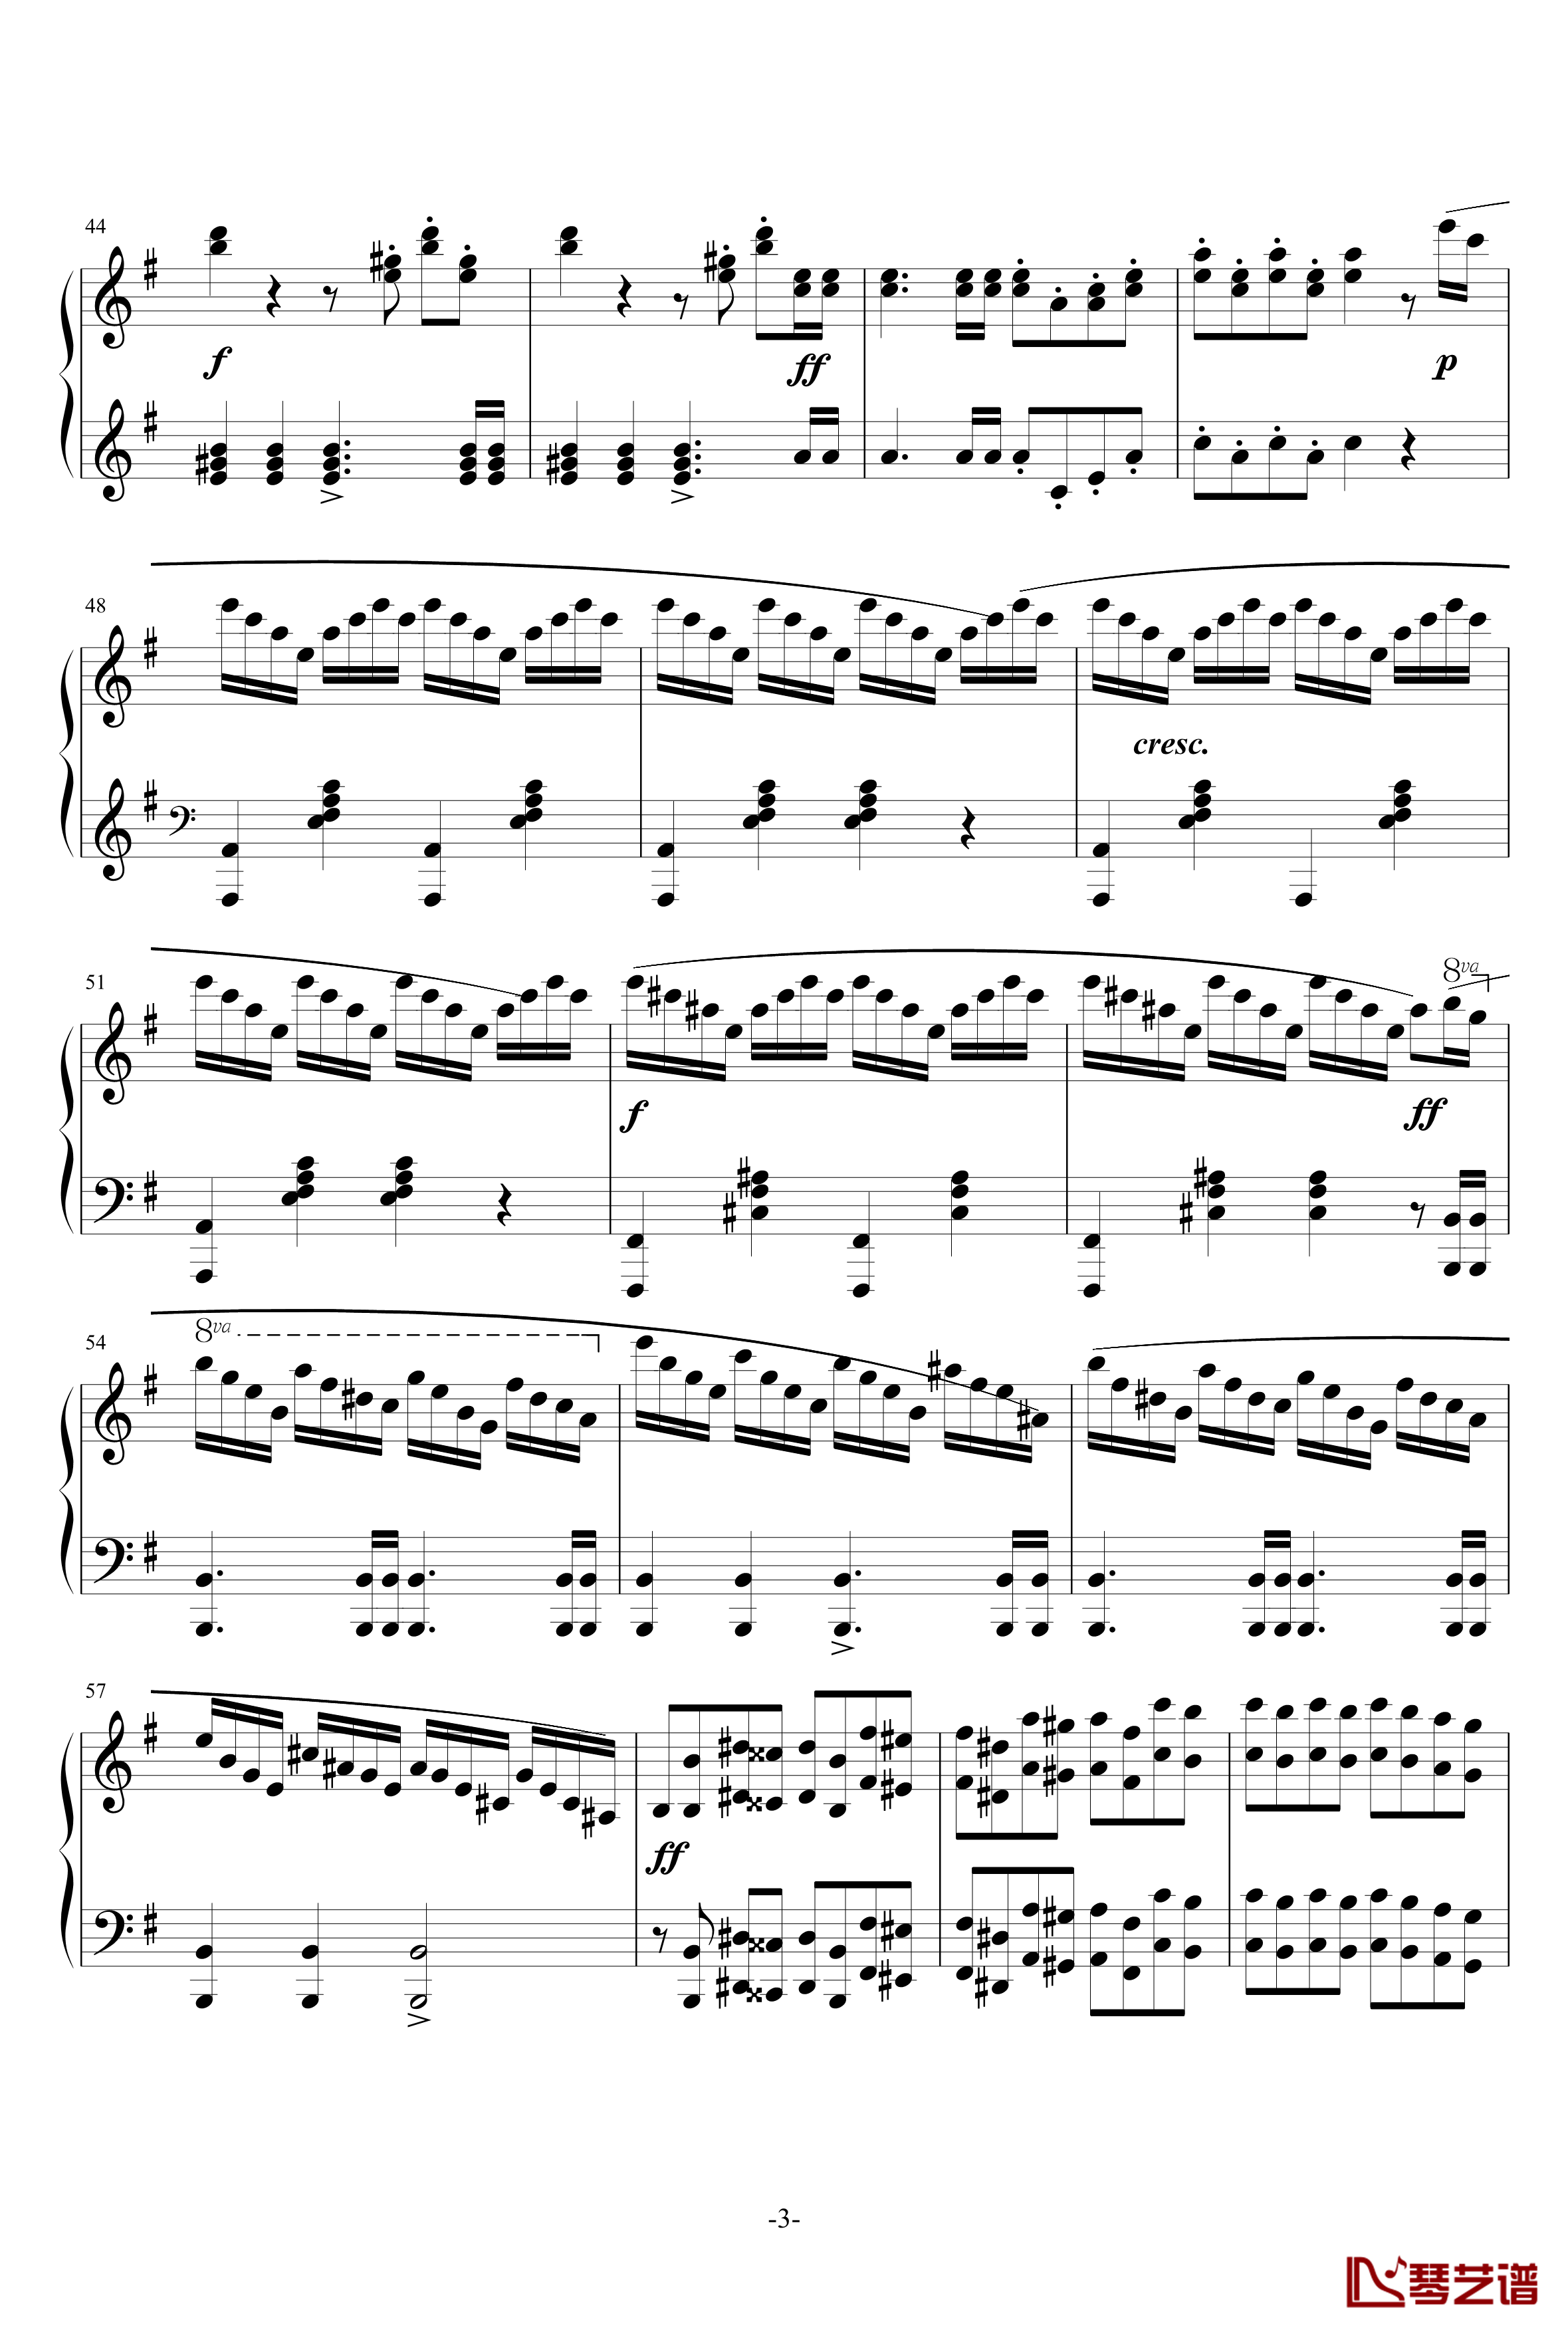 谐虐曲钢琴谱-门德尔松